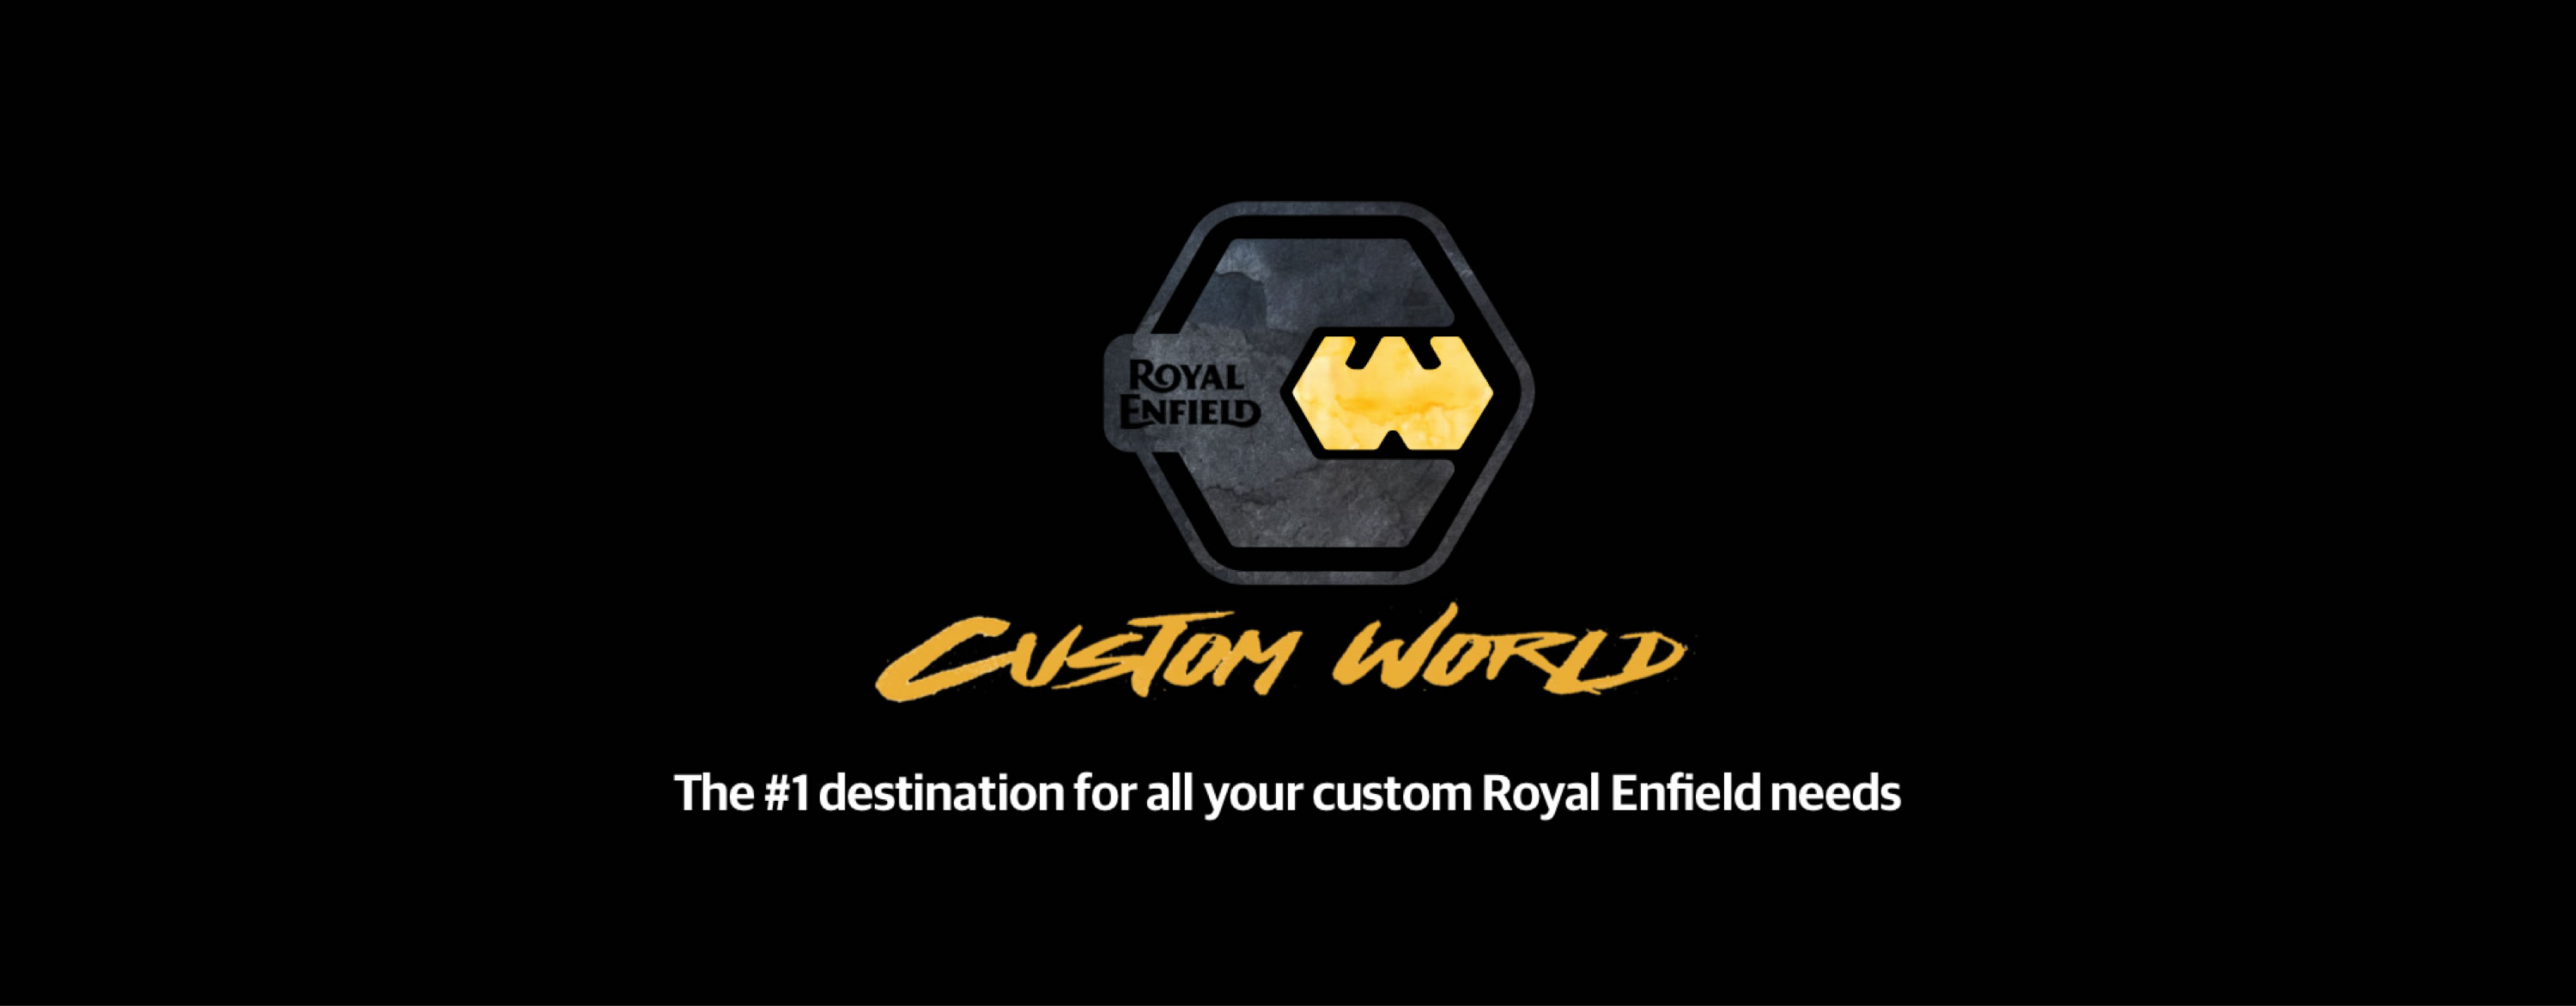 カスタムワールド | Custom World